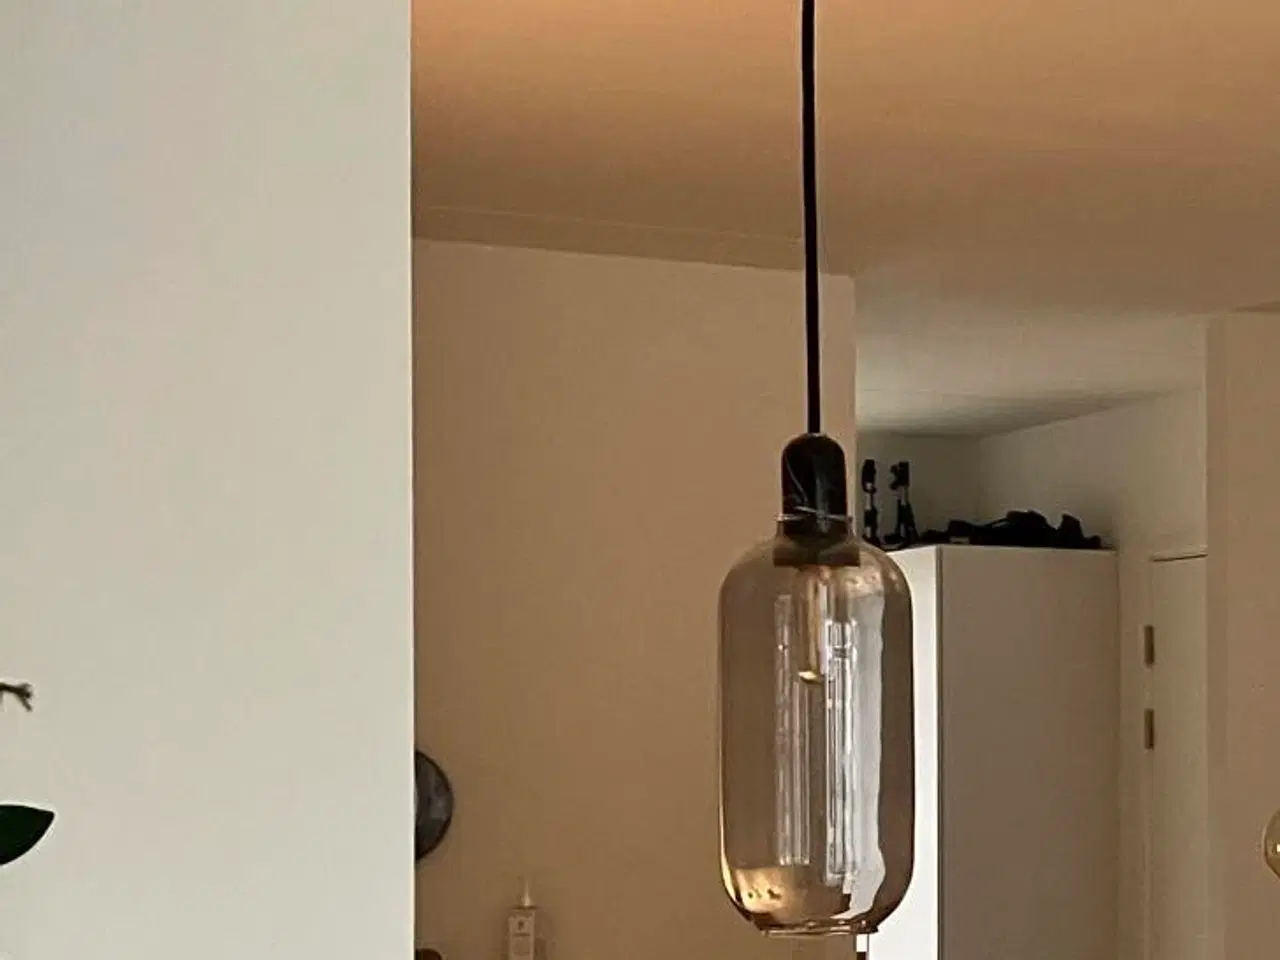 Billede 2 - 2 loftlamper i glas